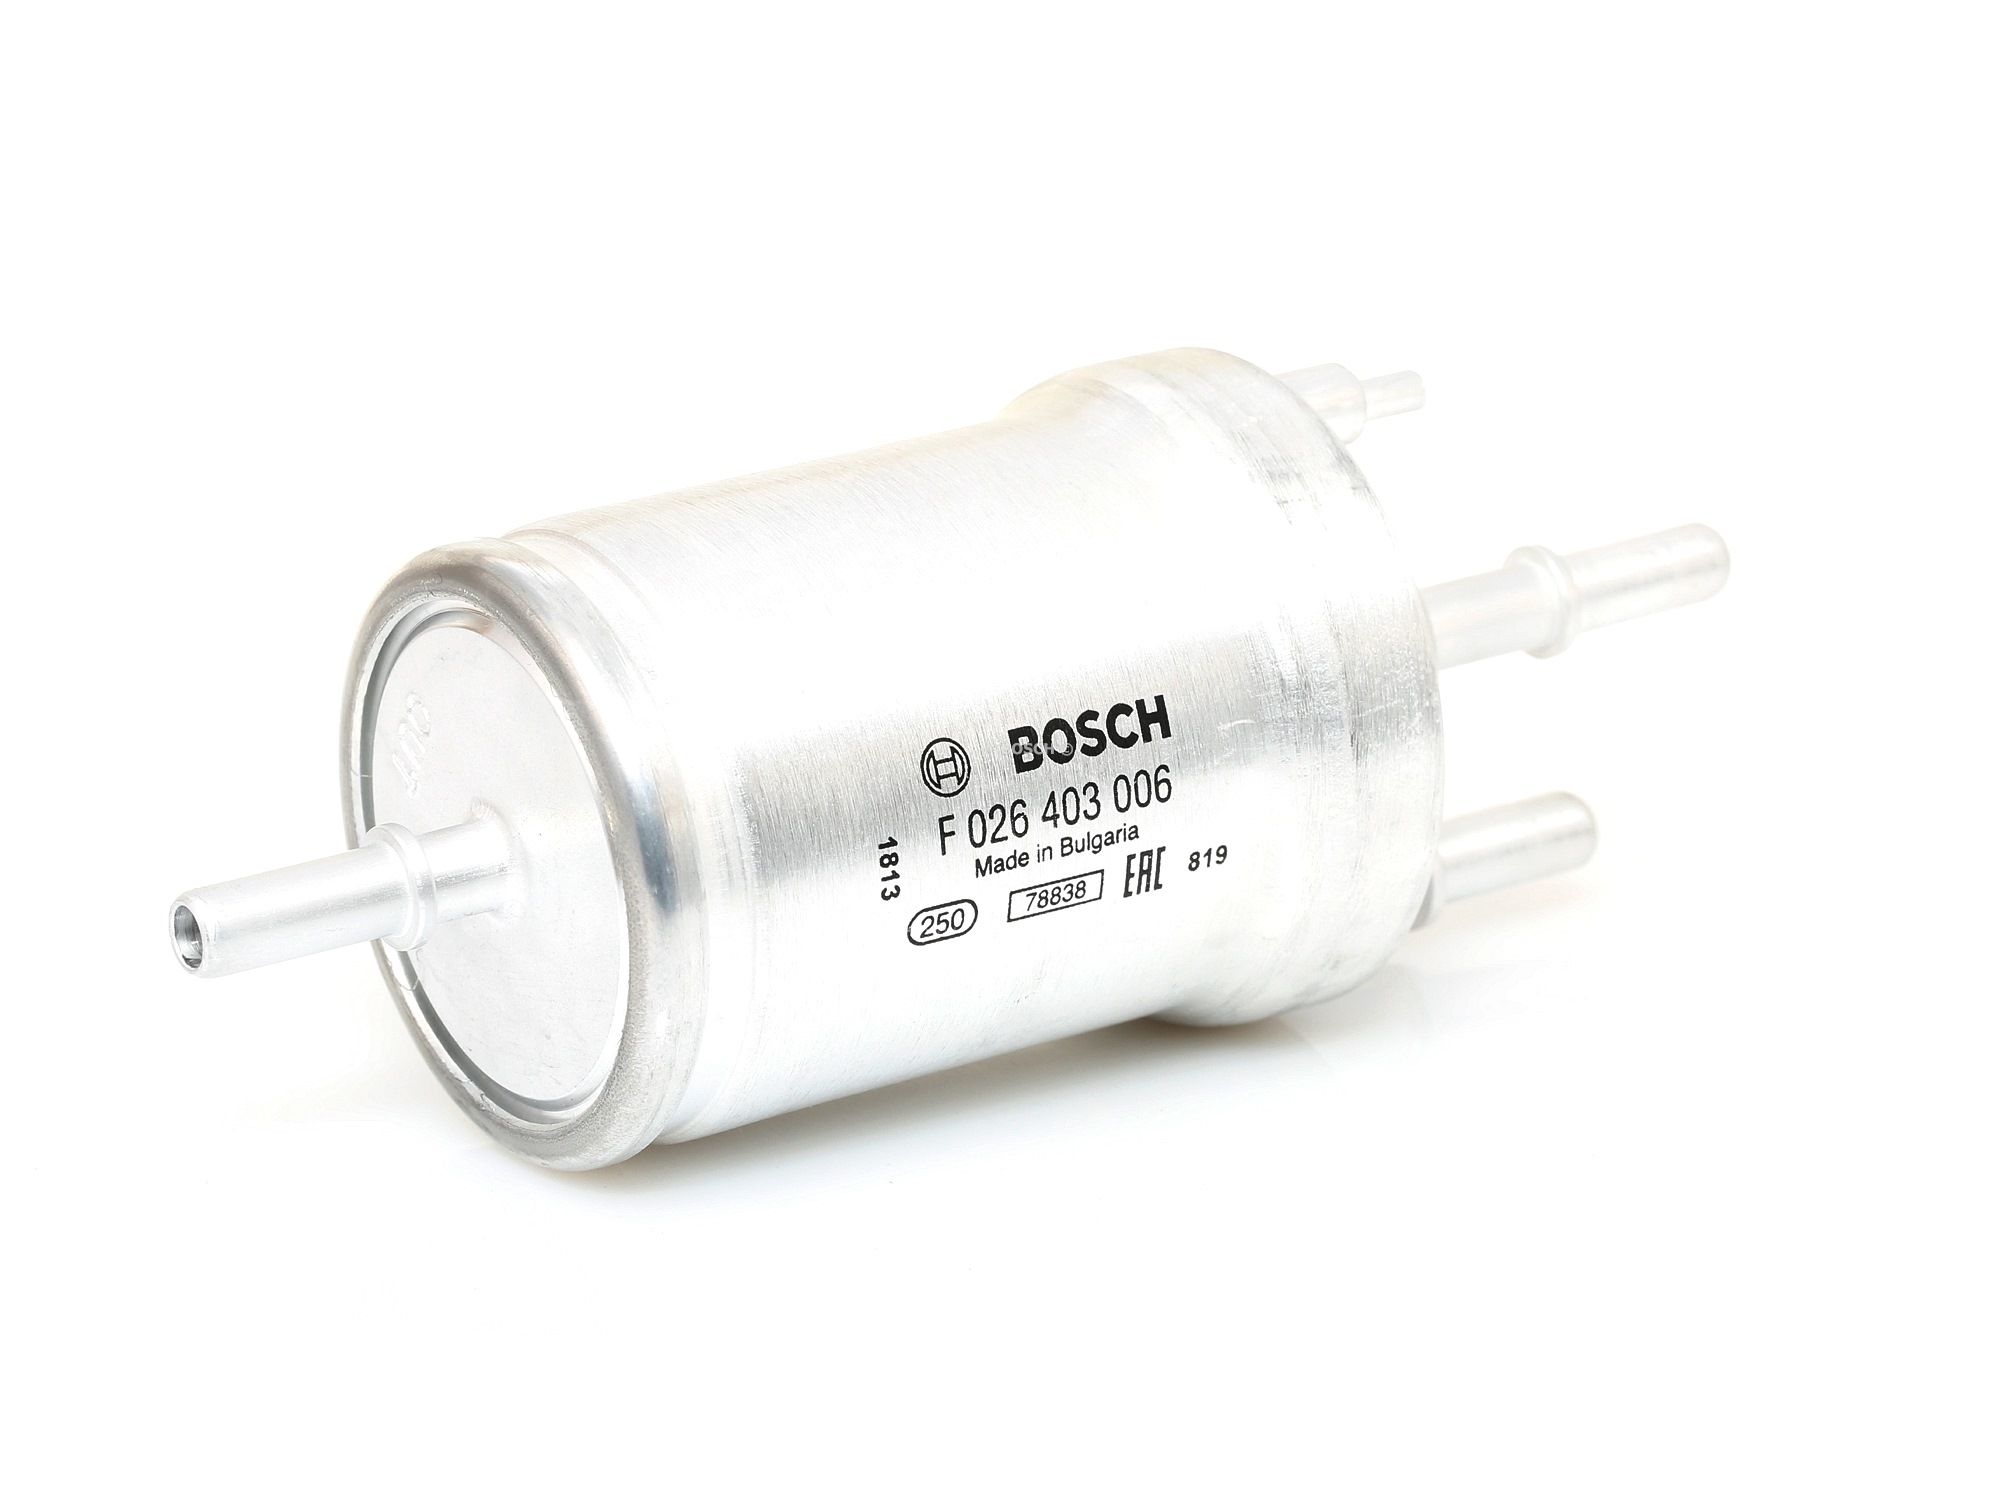 BOSCH F 026 403 006 Palivový filtr Filtr zabudovaný do potrubí, 8mm, 8mm Volkswagen GOLF 2014 v originální kvalitě